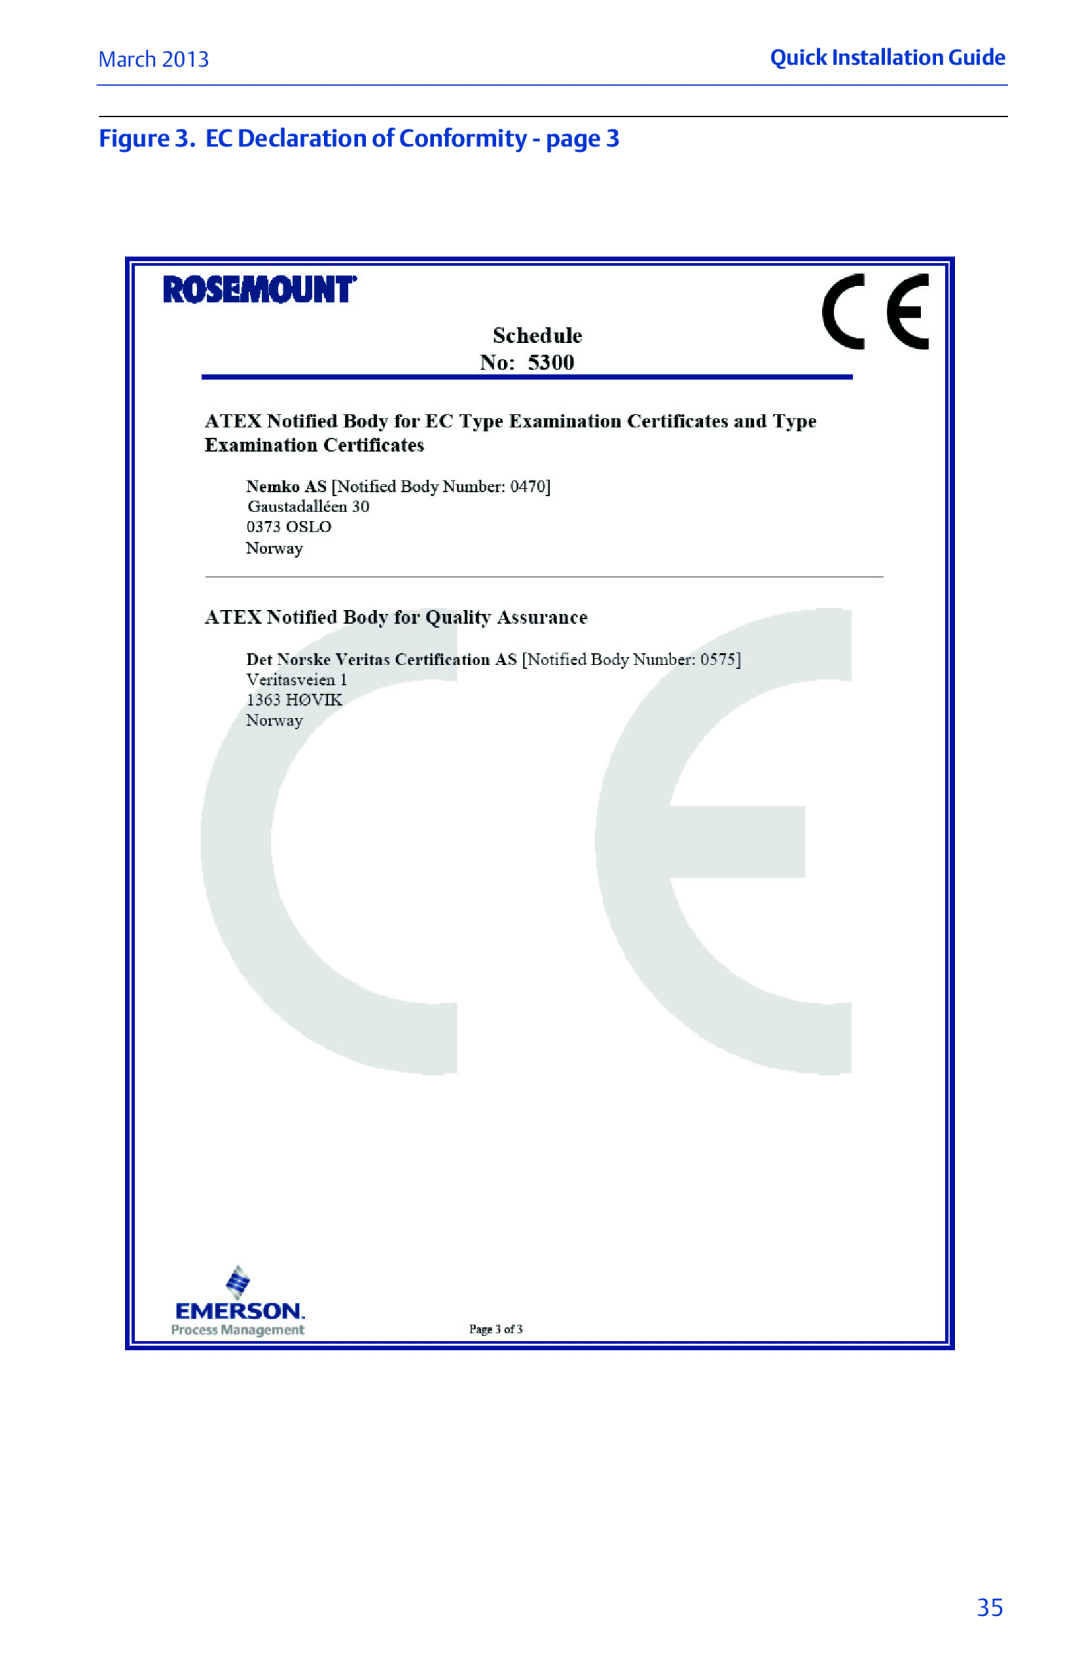 Emerson 00825-0100-4530 Rev EC manual EC Declaration of Conformity - page, March, Quick Installation Guide 